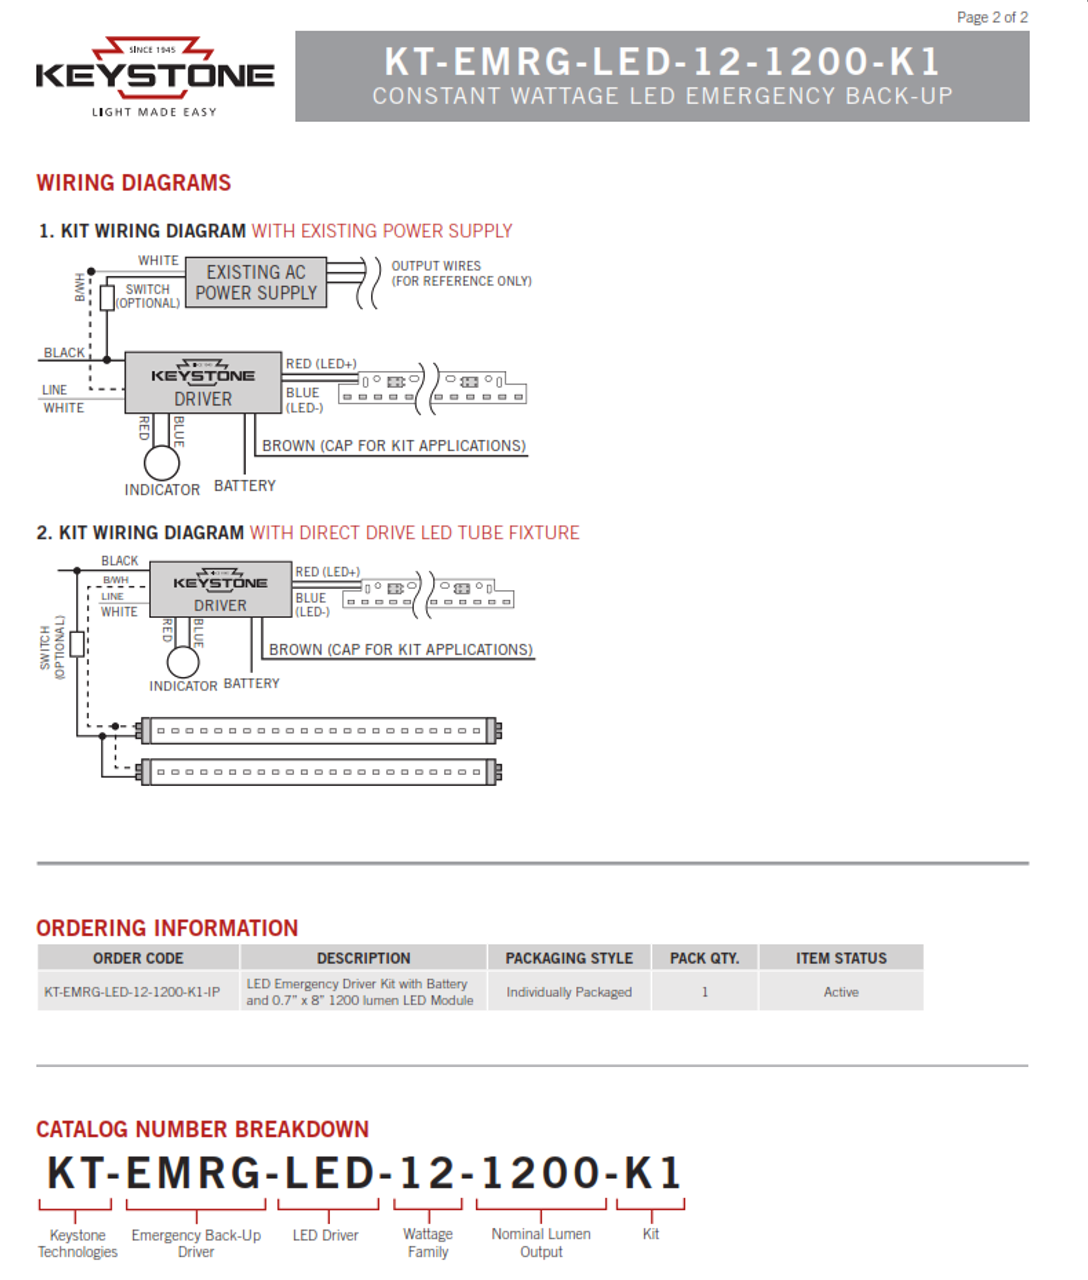 Keystone KT-EMRG-LED-12-1200-K1- LED Emergency Backup